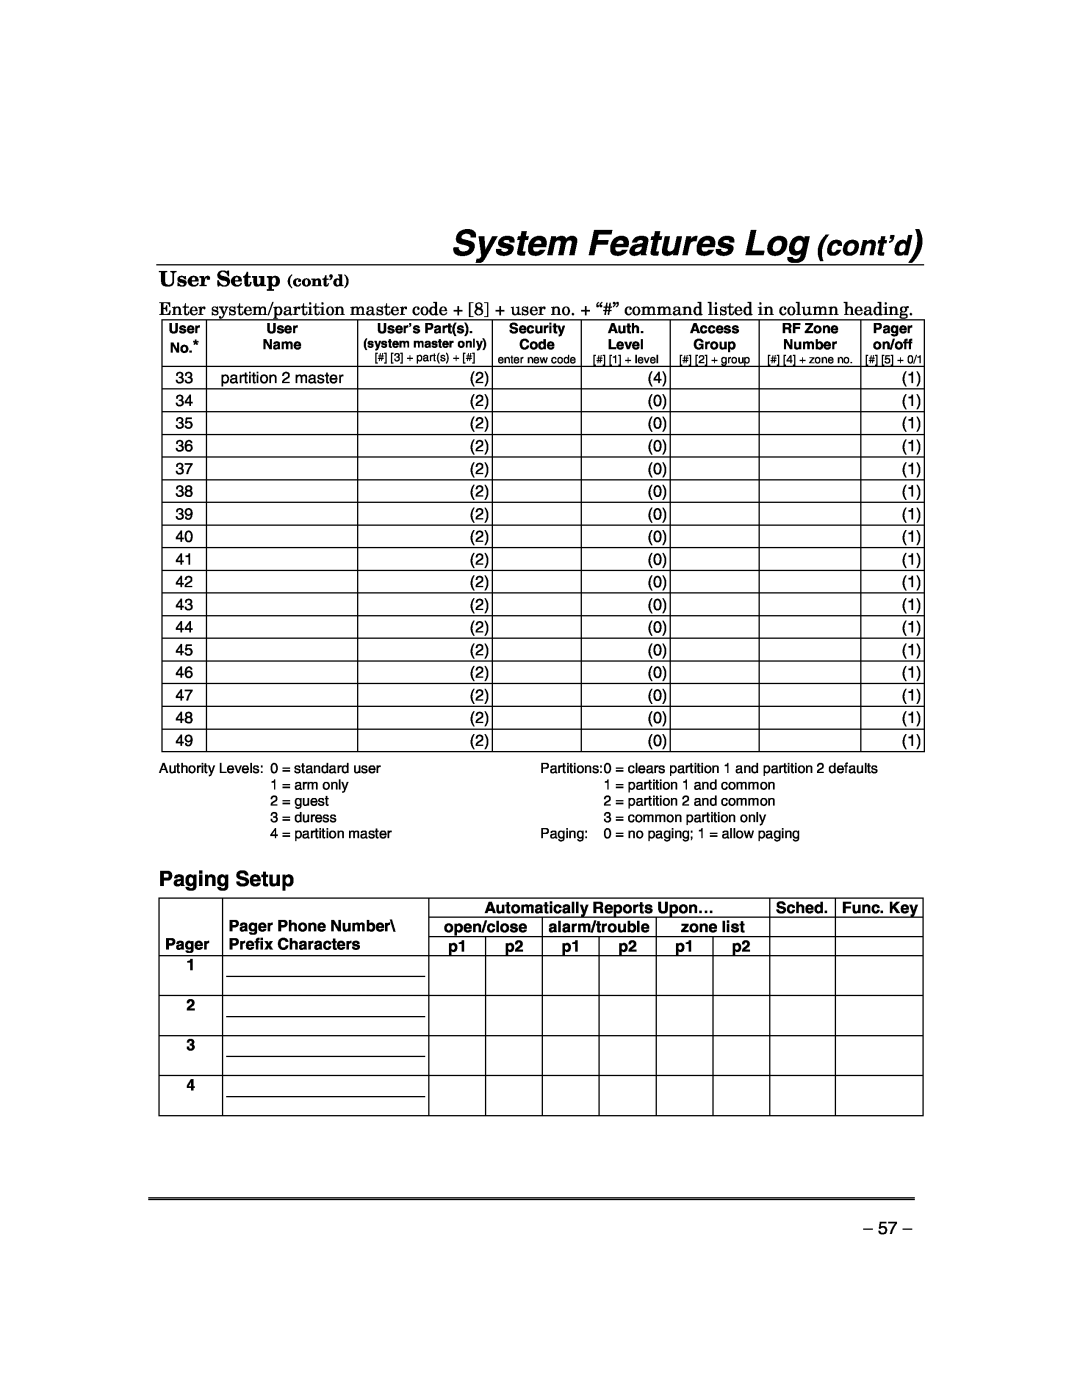 Honeywell VISTA-21IPSIA manual User Setup cont’d, Paging Setup, System Features Log cont’d 